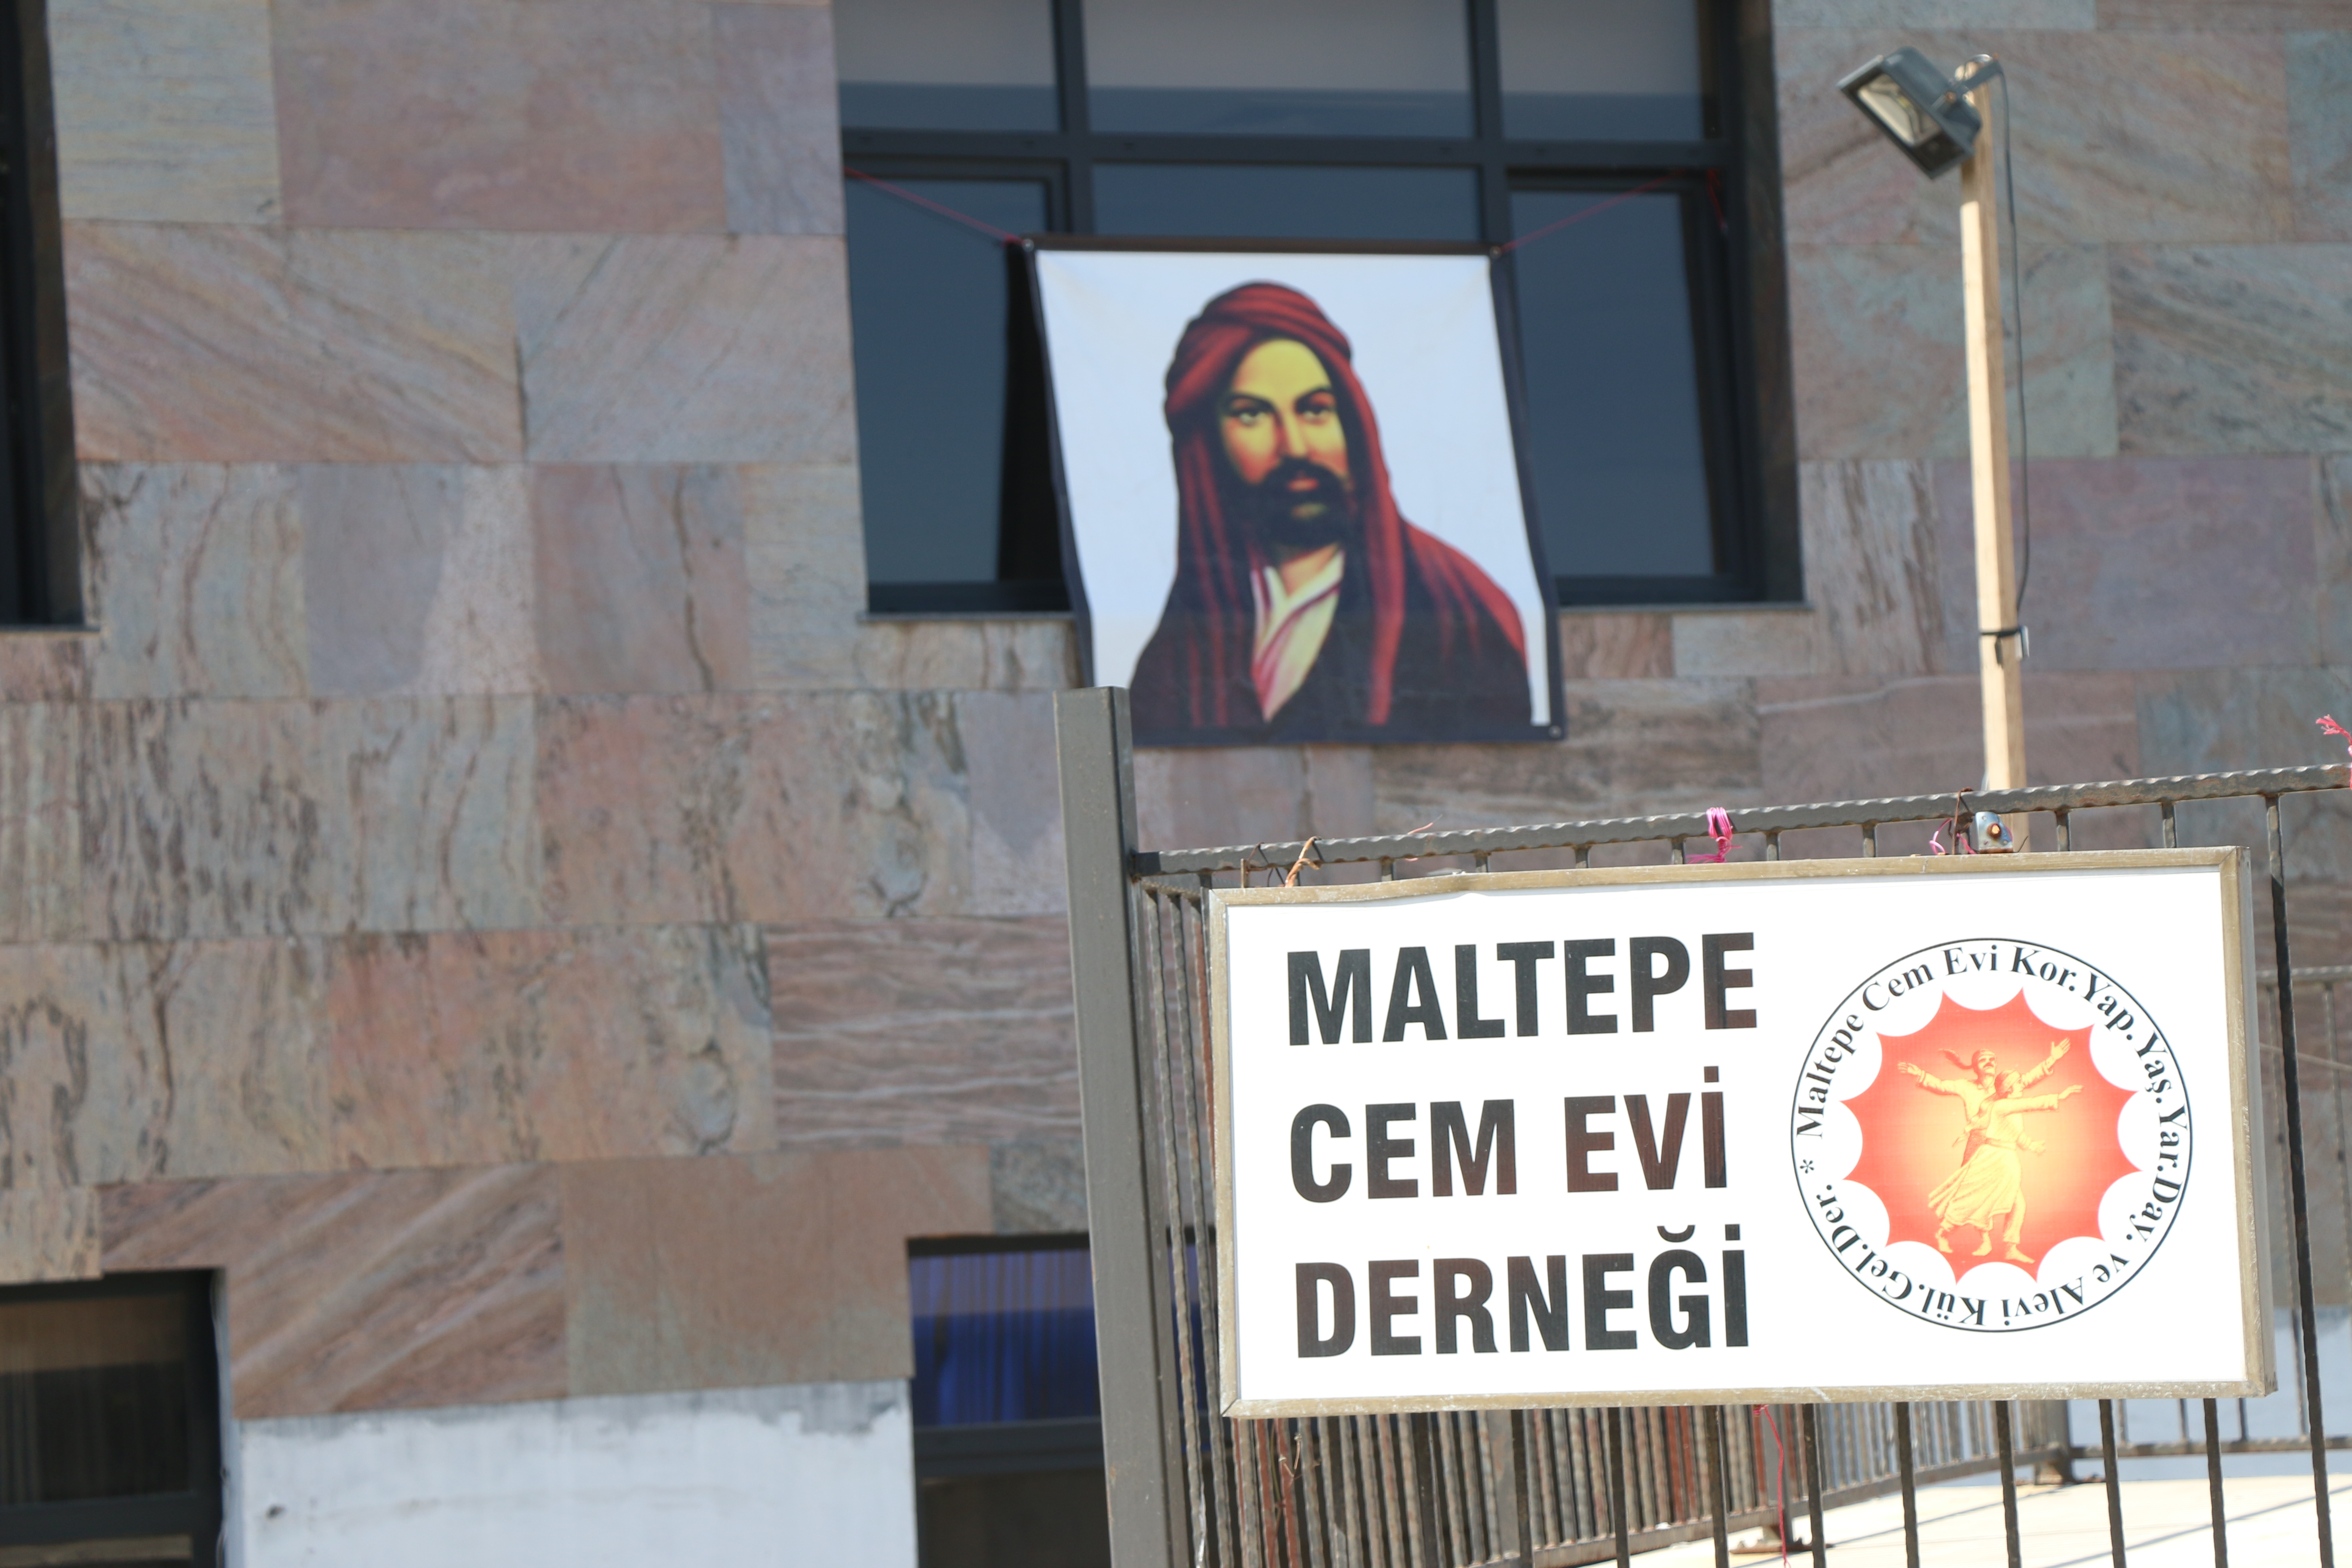 Maltepe Belediyesi Maltepe Cemevini mahkemeye verdi